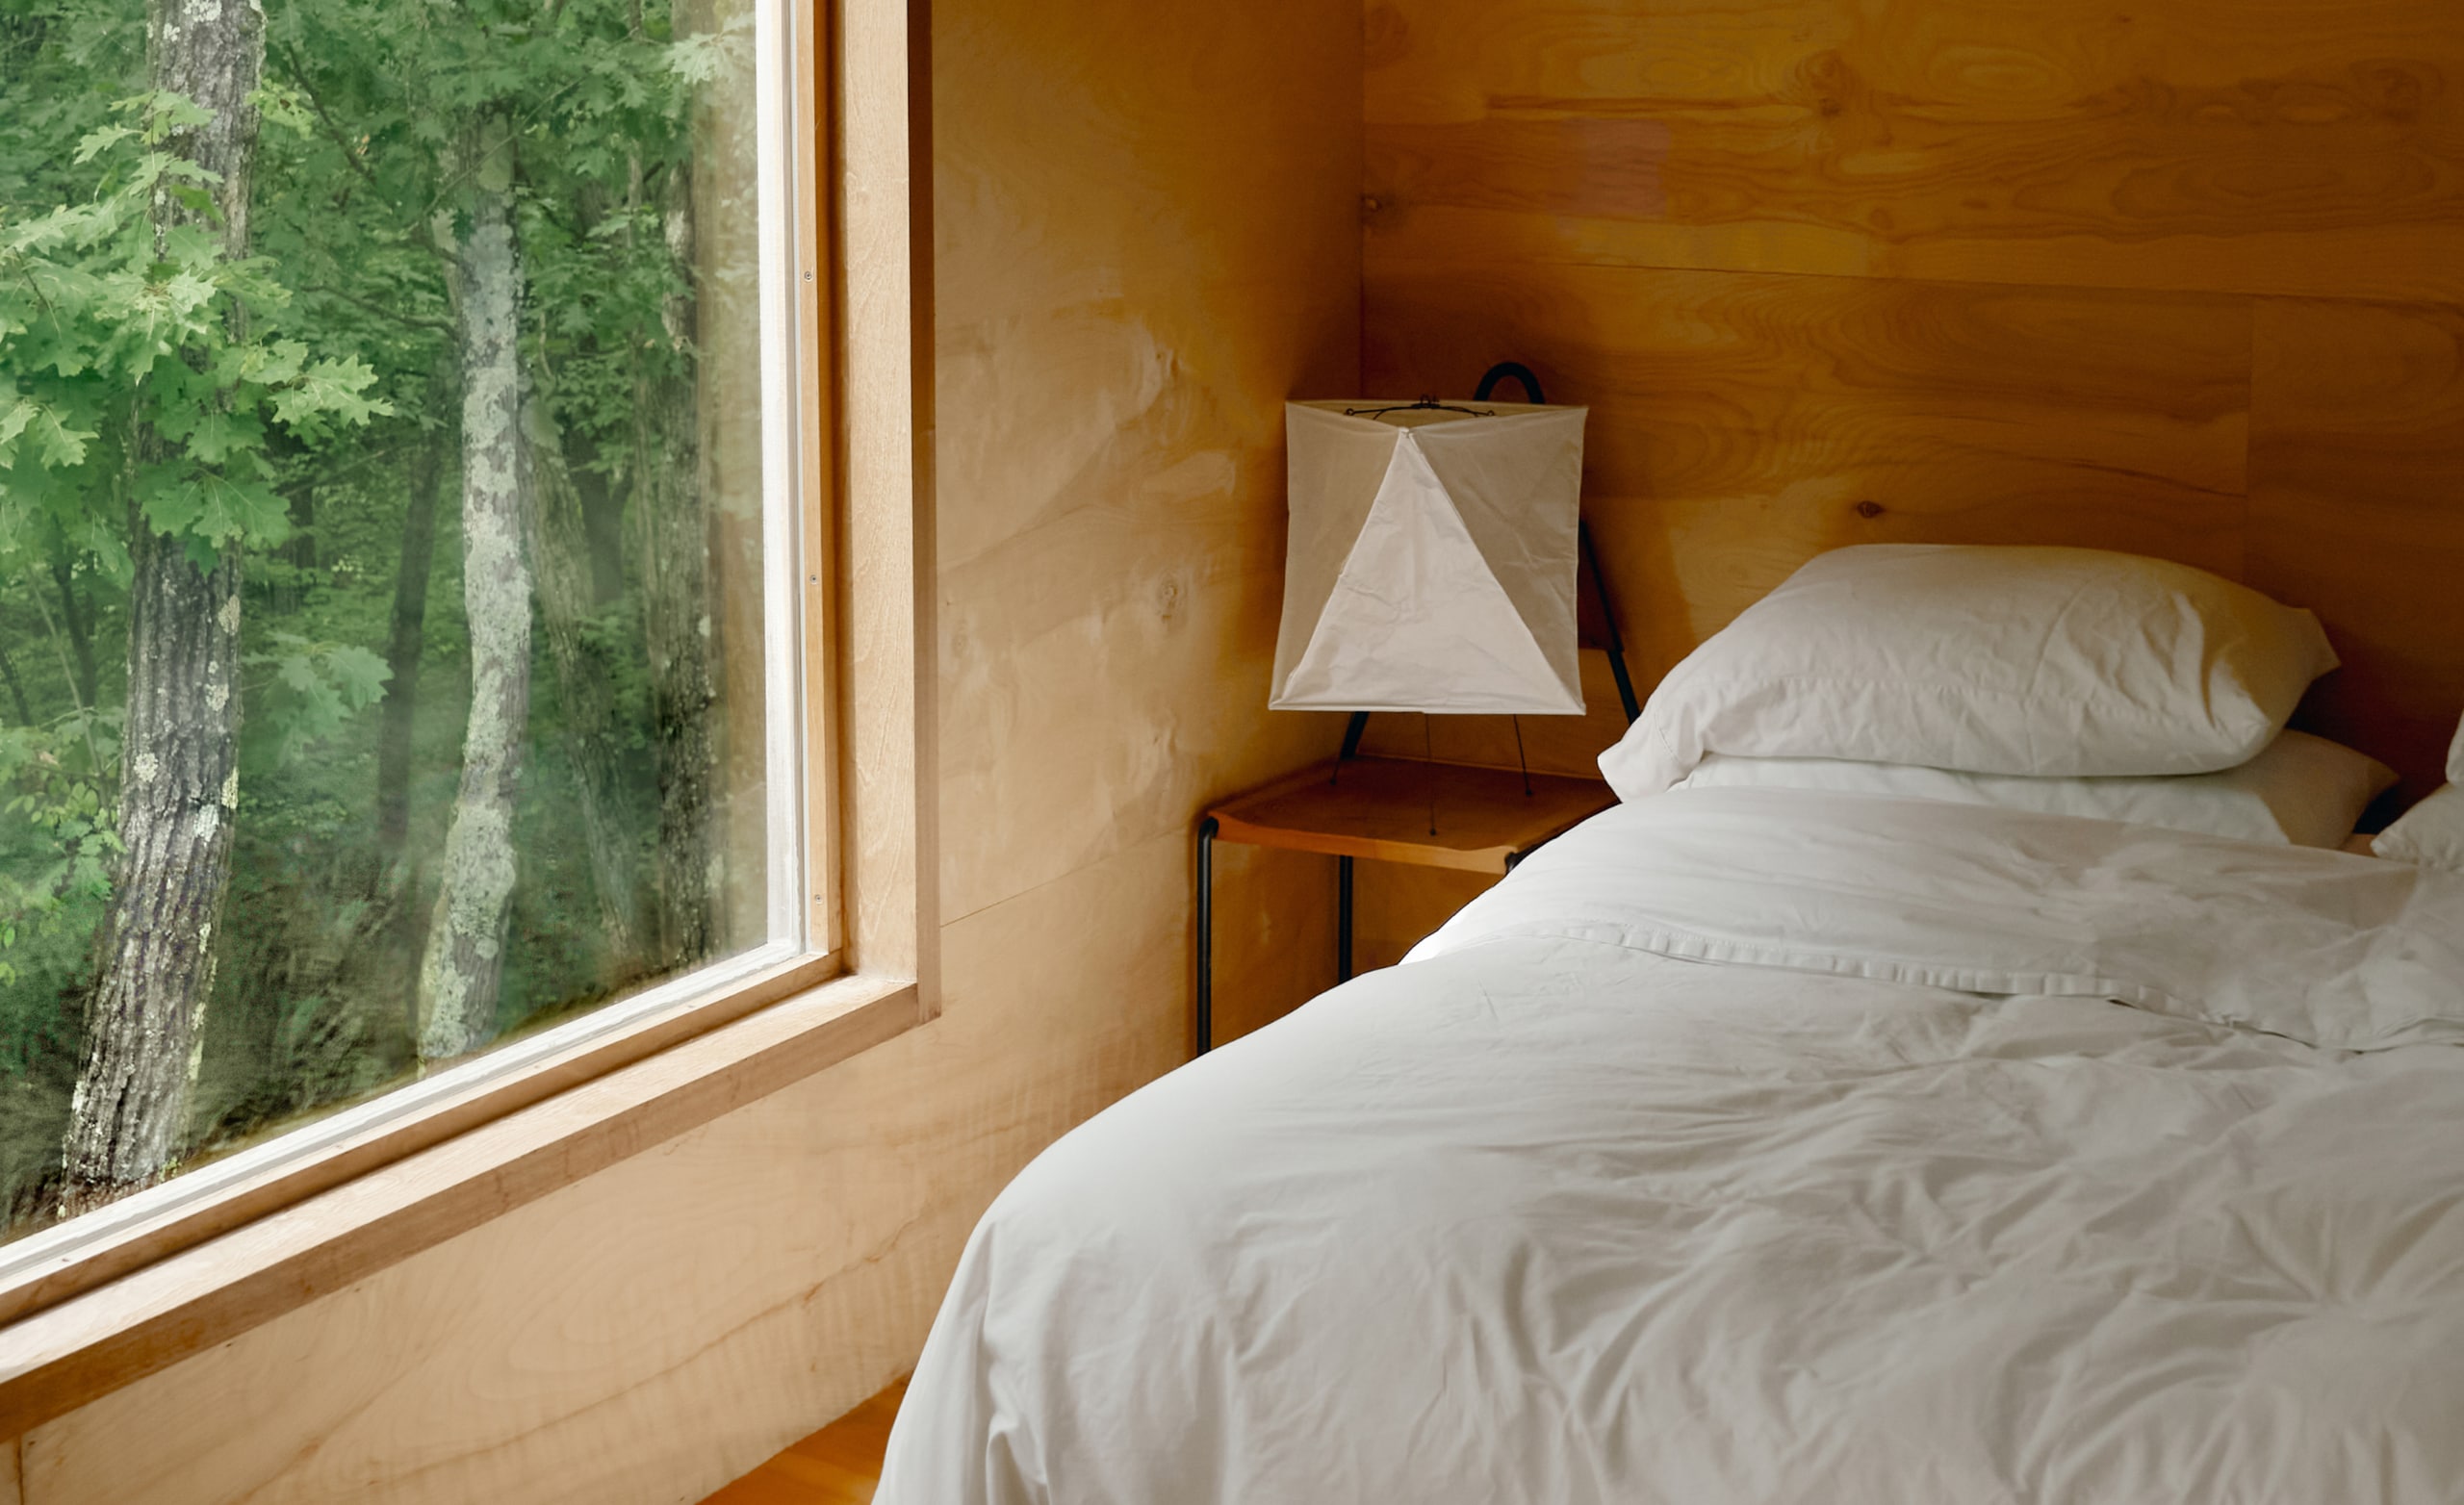 Ett sovrum med vita lakan på en nybäddad säng och ett stort fönster med träd utanför.